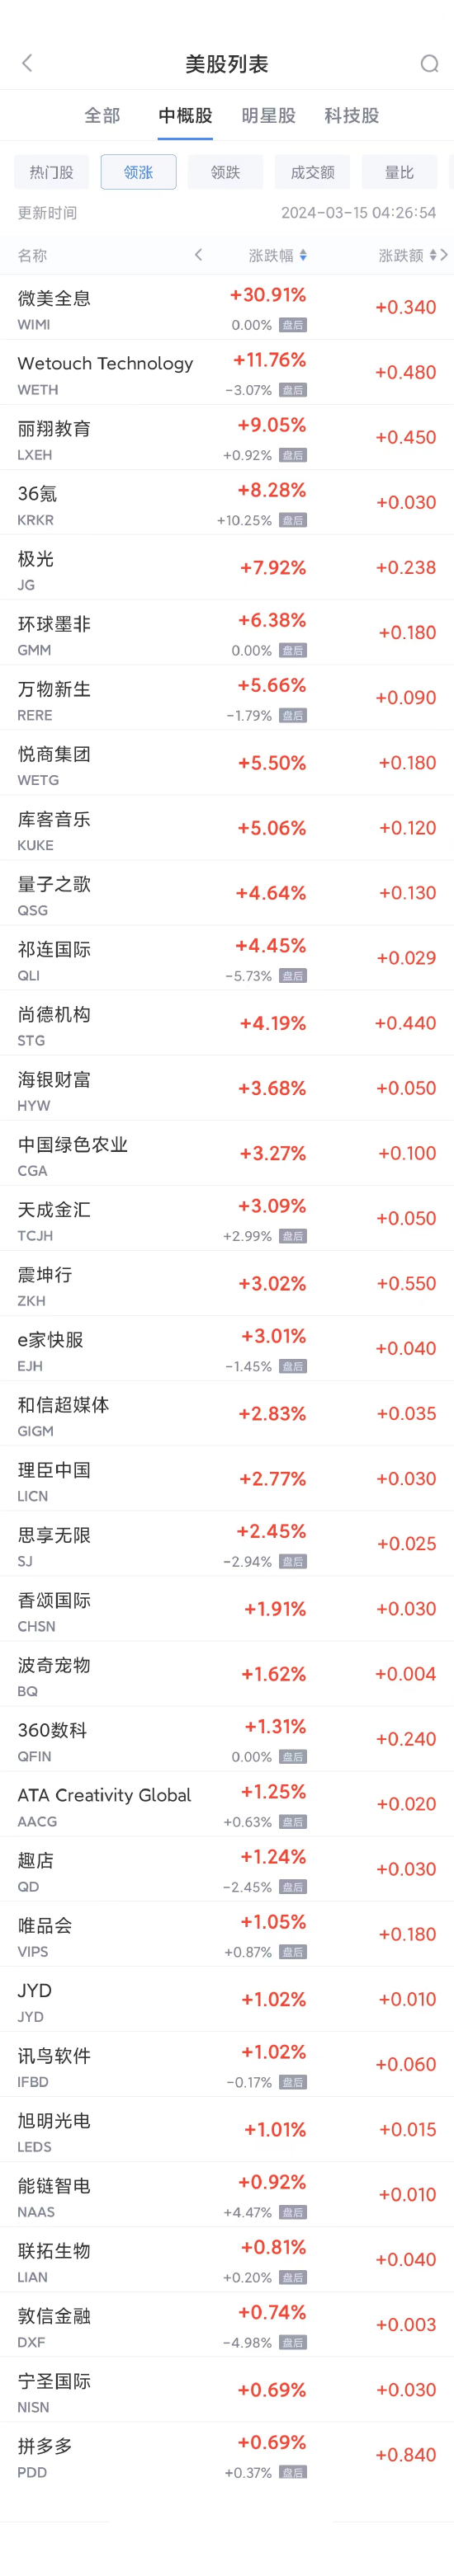 热门中概股周四多数走低 华赢证券暴跌46.9%，老虎证券跌逾11%